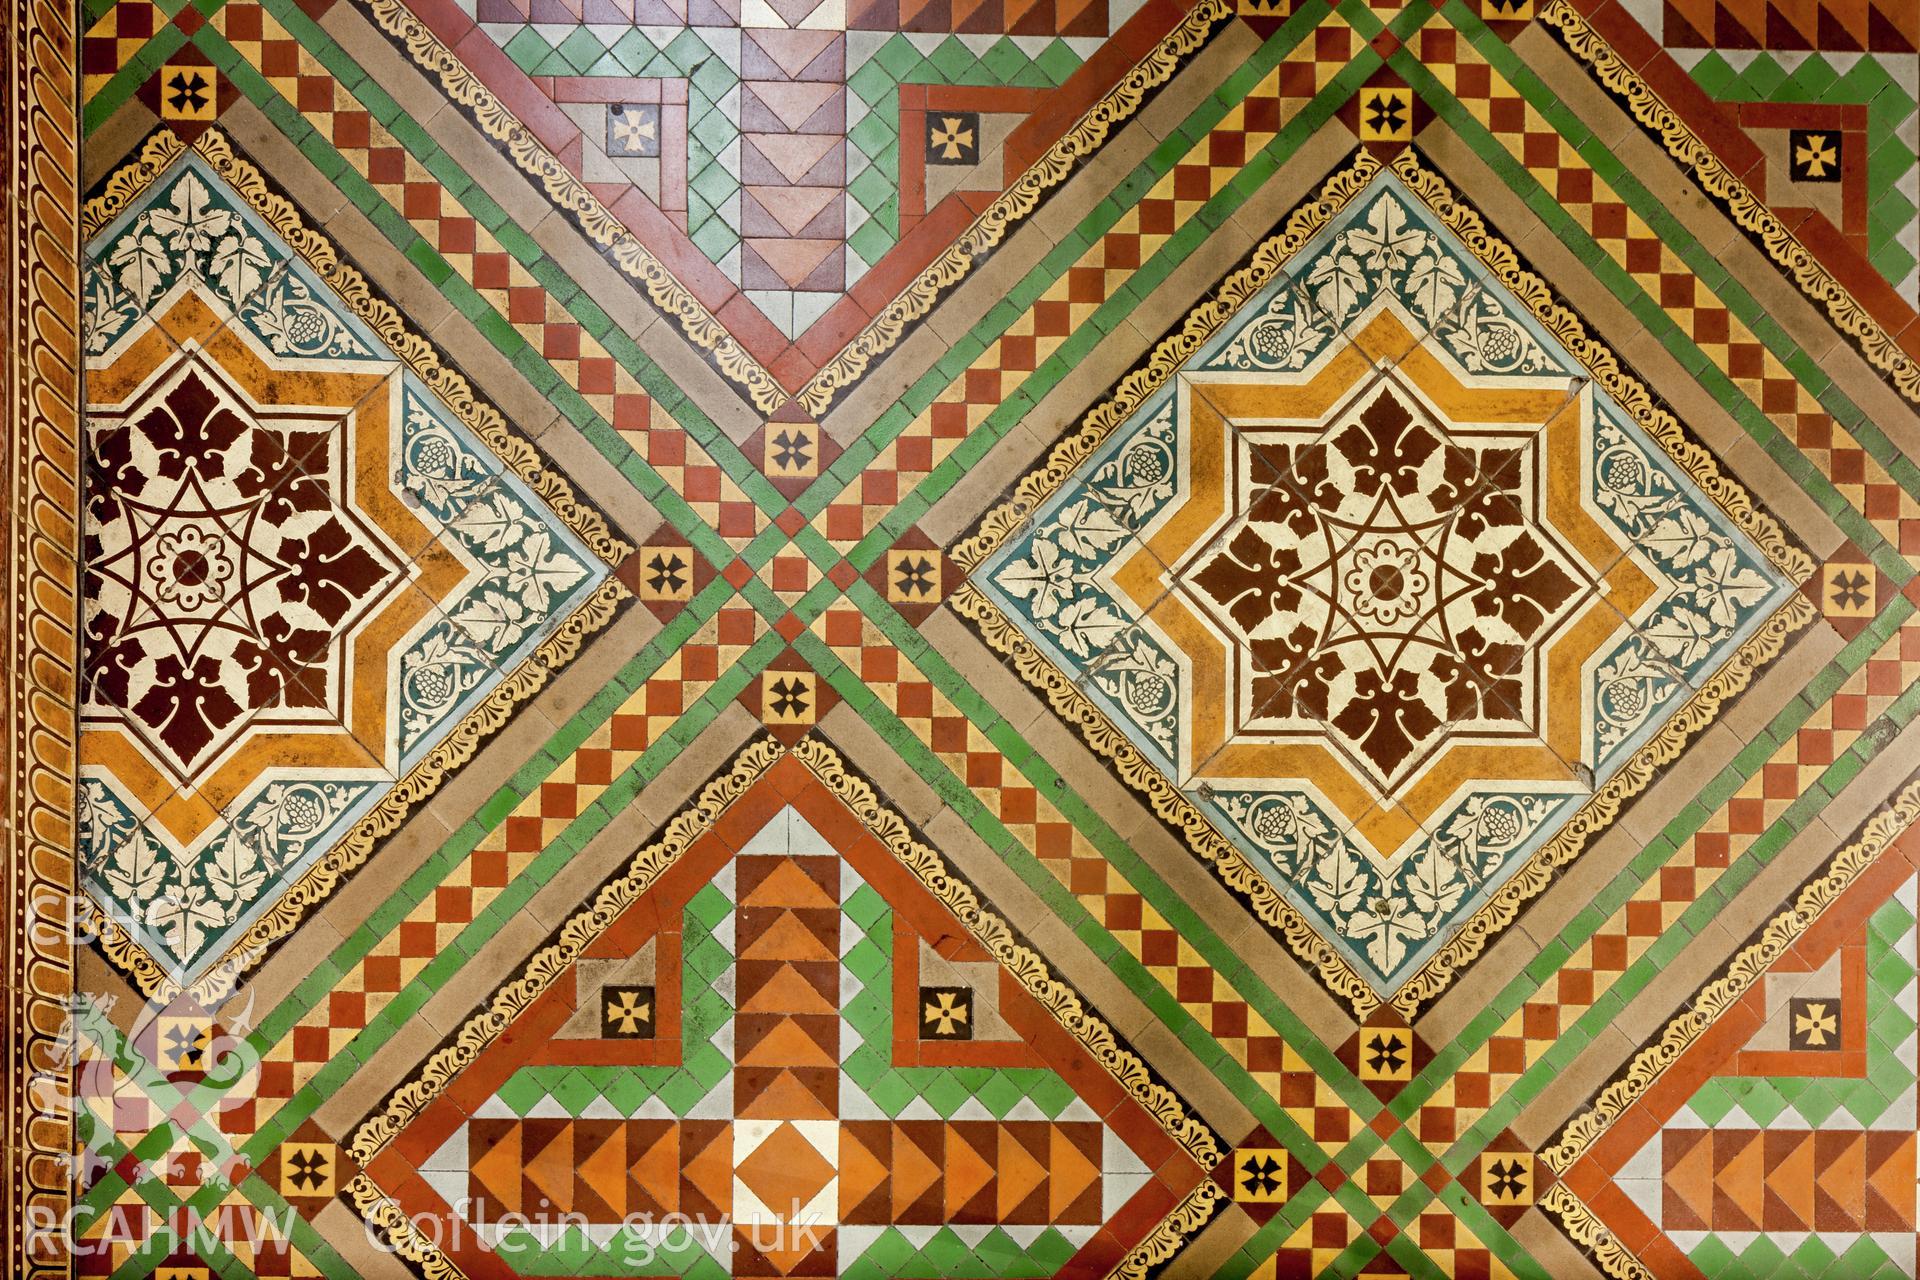 Tiled floor in chancel